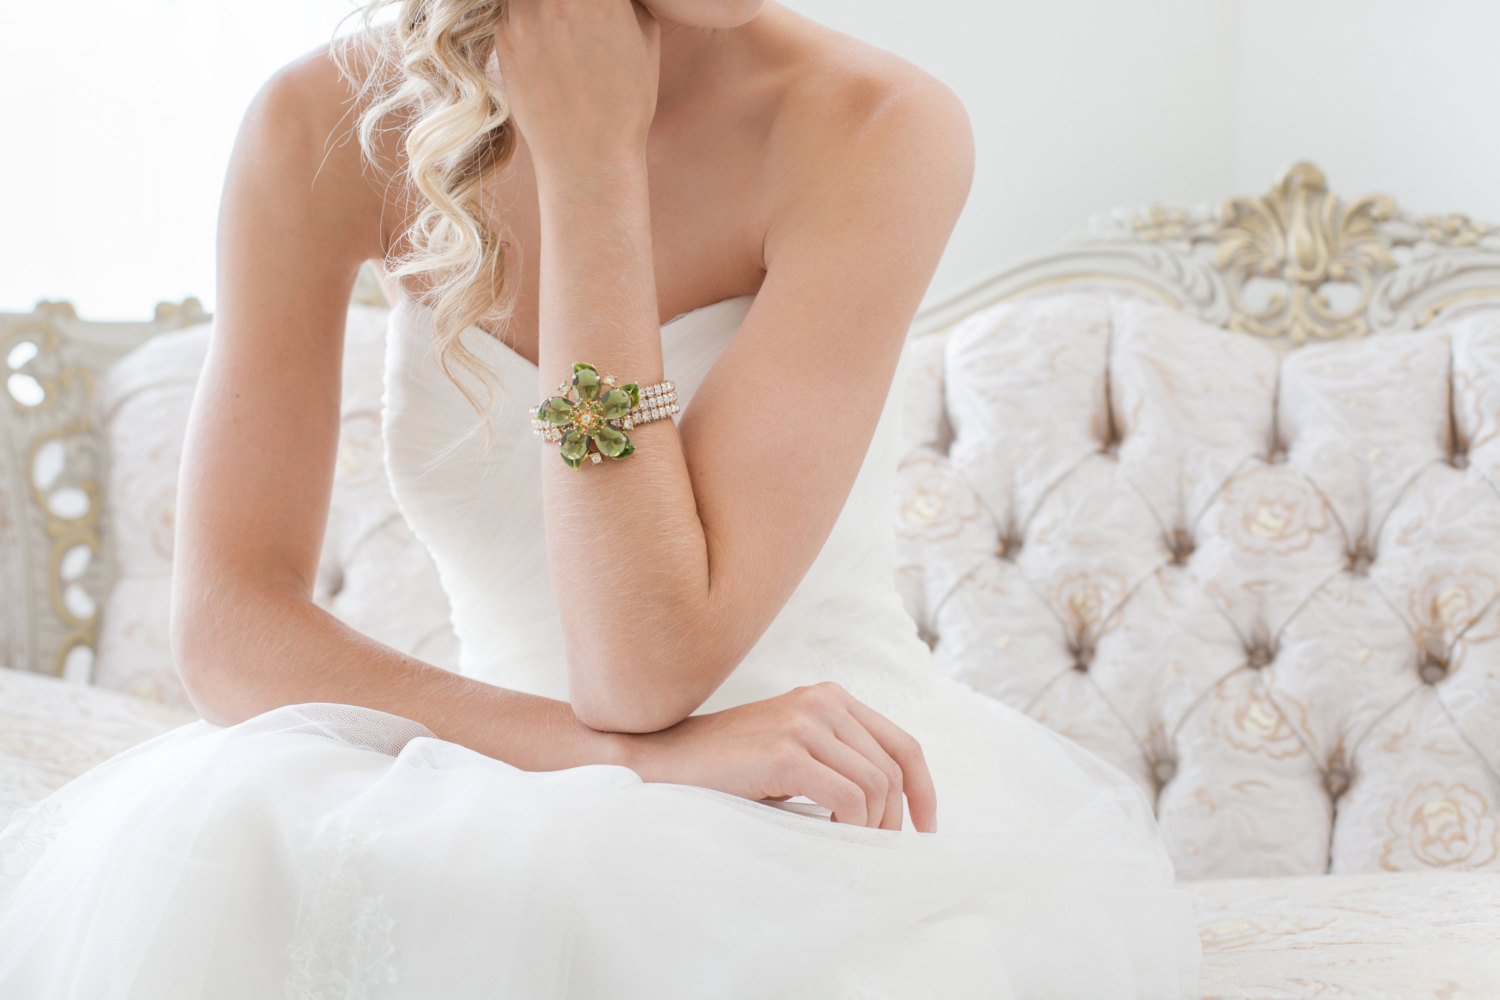 green rhinestone bridal cuff bracelet by cloe noel, photo by la candella weddings